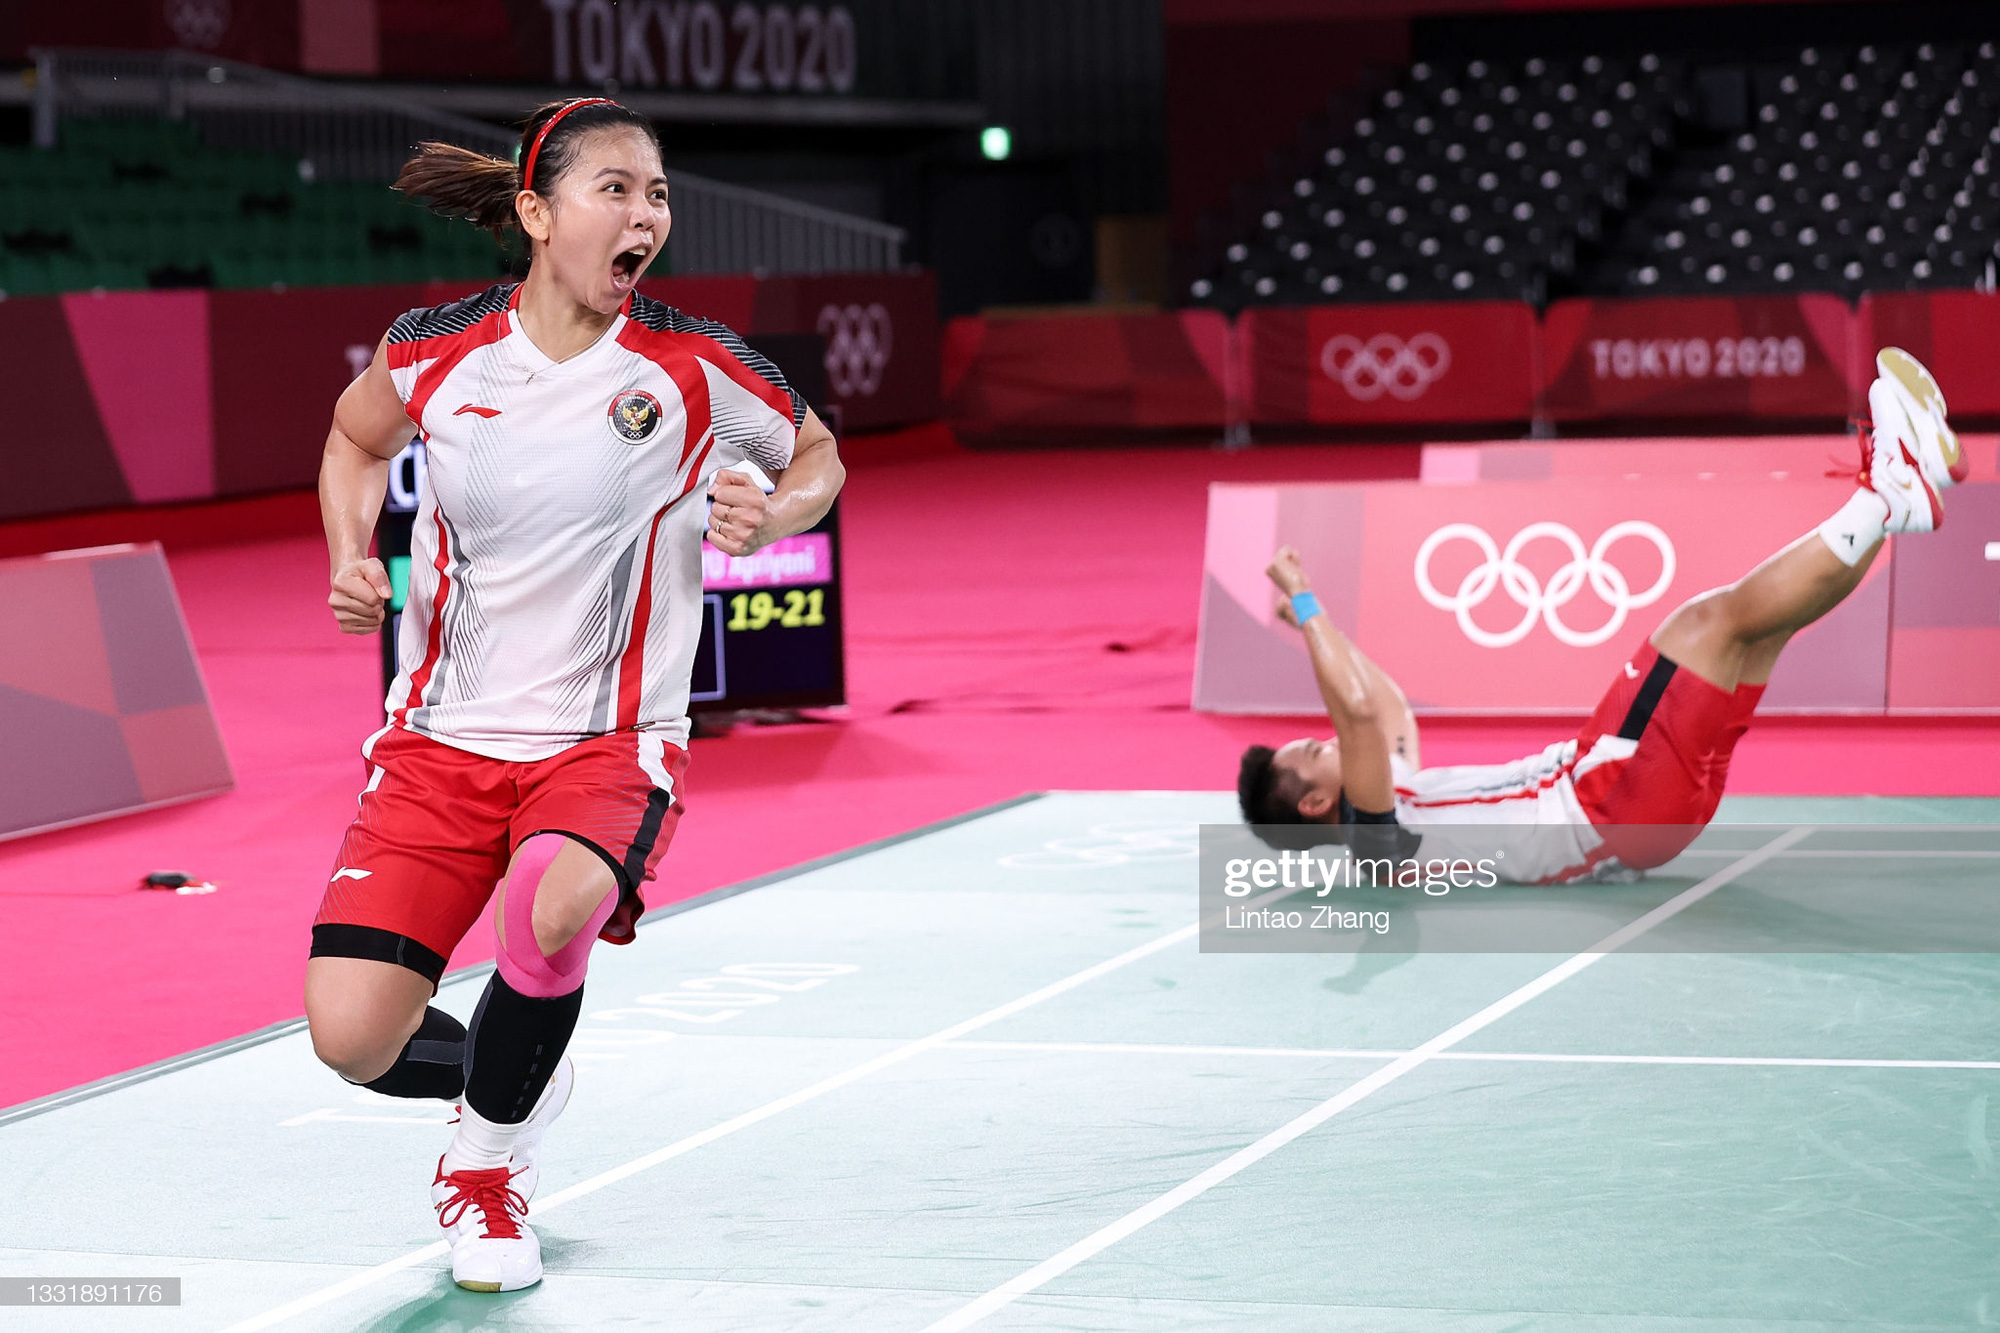 Sau bùng nổ trên sân, cặp đôi HCV Olympic cầu lông của Indonesia cúi người tỏ lòng biết ơn đầy xúc động - Ảnh 1.